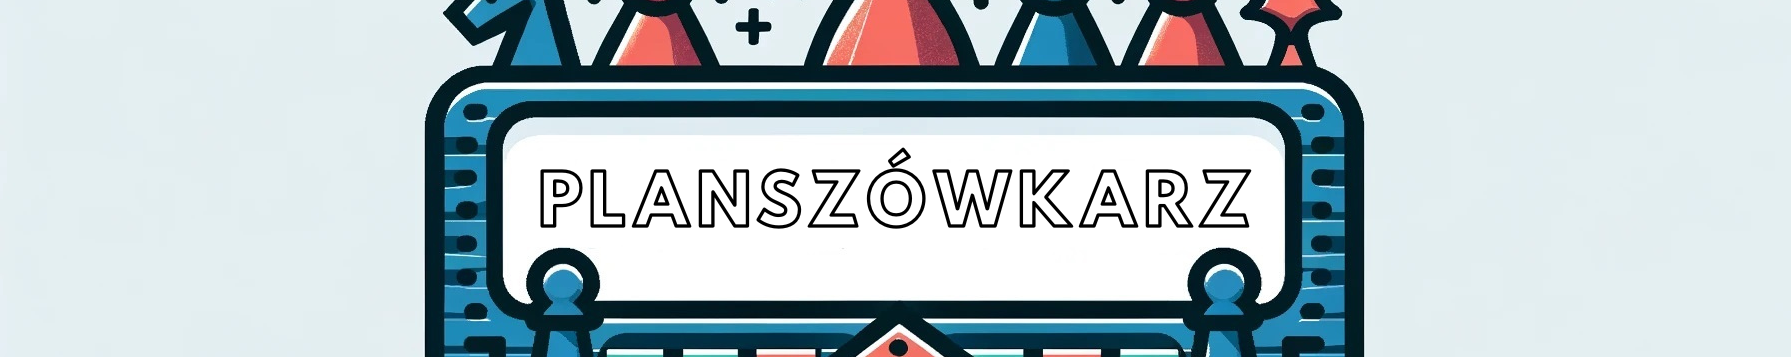 Planszówkarz.pl